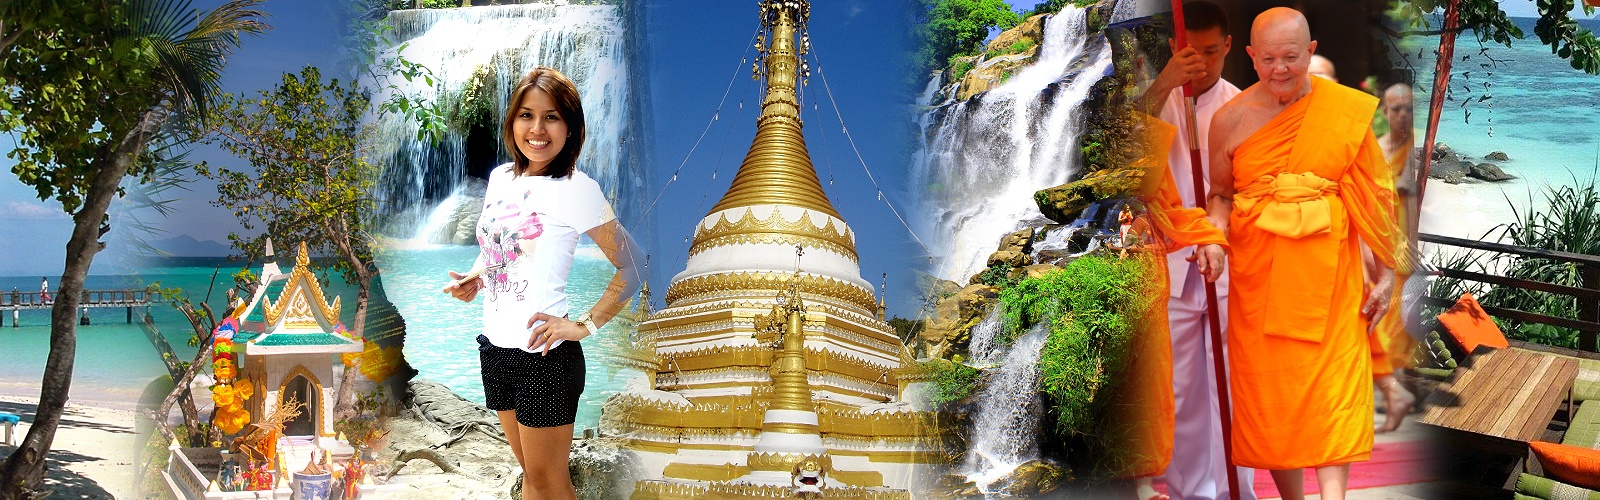 Le Sud de la Thaïlande - Offizielle Seite Thailändisches Fremdenverkehrsamt